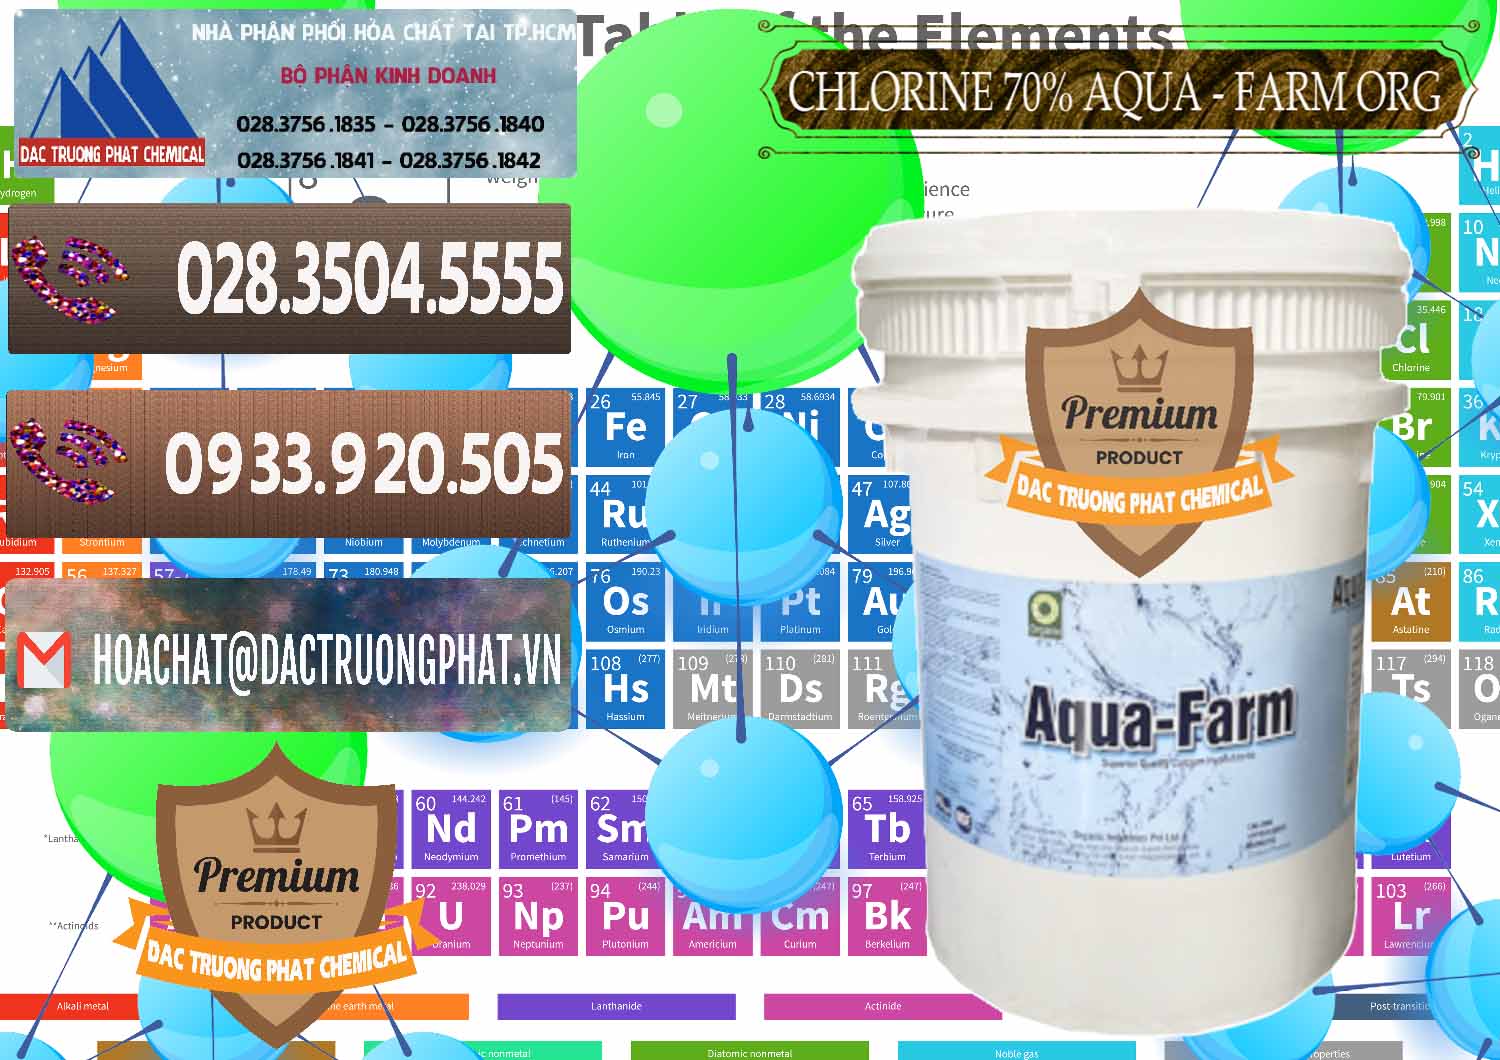 Chuyên bán - cung cấp Chlorine – Clorin 70% Aqua - Farm ORG Organic Ấn Độ India - 0246 - Công ty nhập khẩu và phân phối hóa chất tại TP.HCM - hoachatviet.net